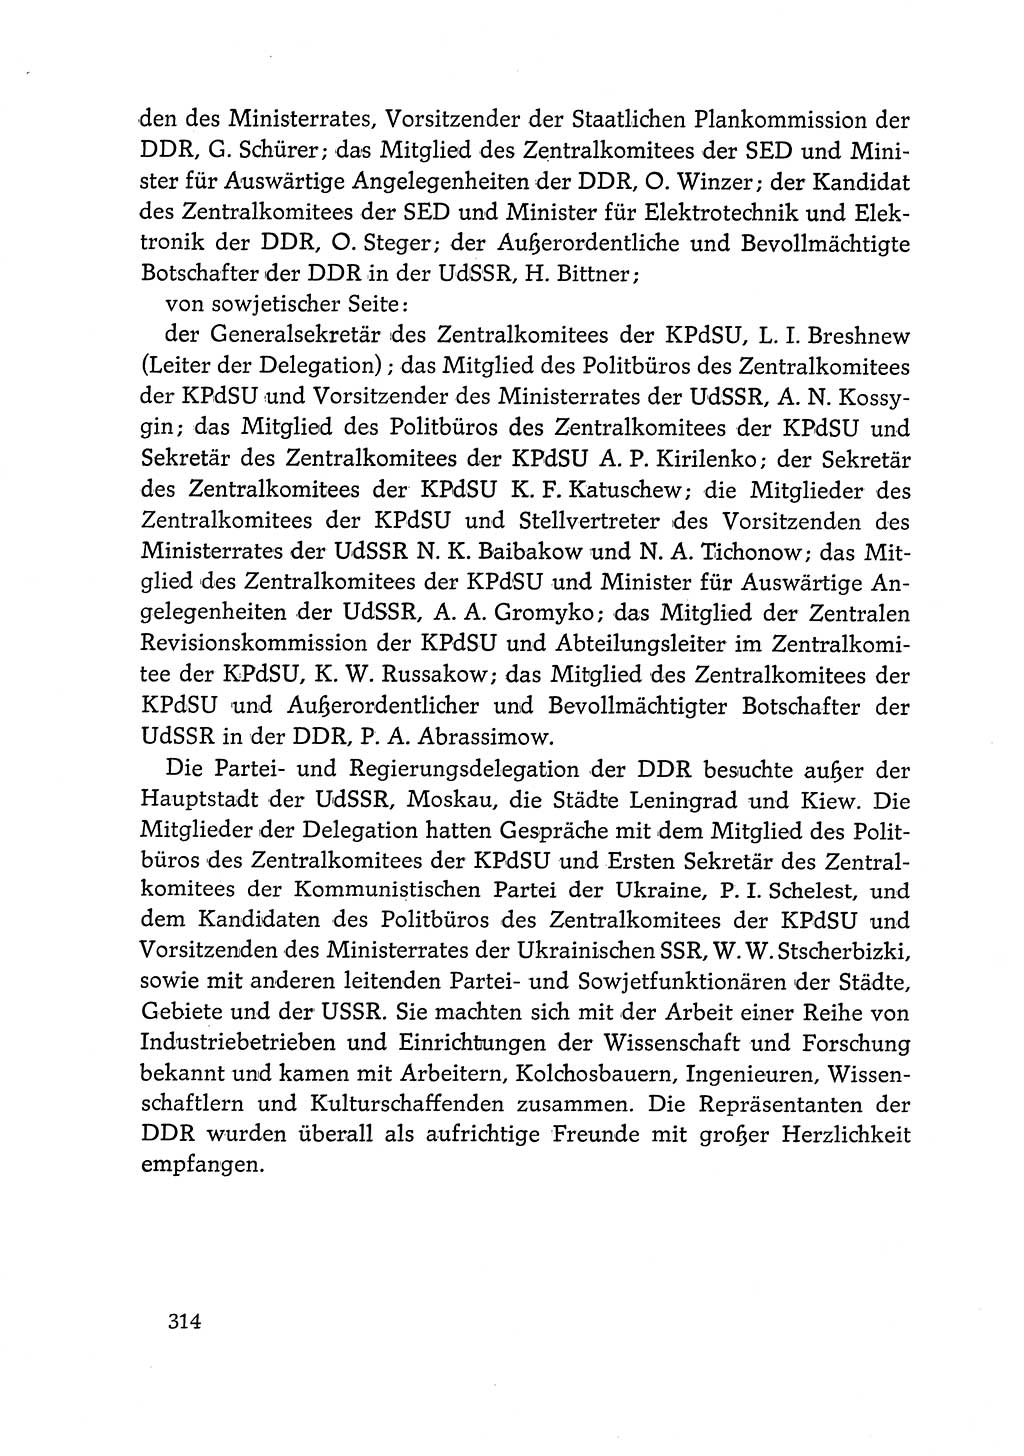 Dokumente der Sozialistischen Einheitspartei Deutschlands (SED) [Deutsche Demokratische Republik (DDR)] 1968-1969, Seite 314 (Dok. SED DDR 1968-1969, S. 314)